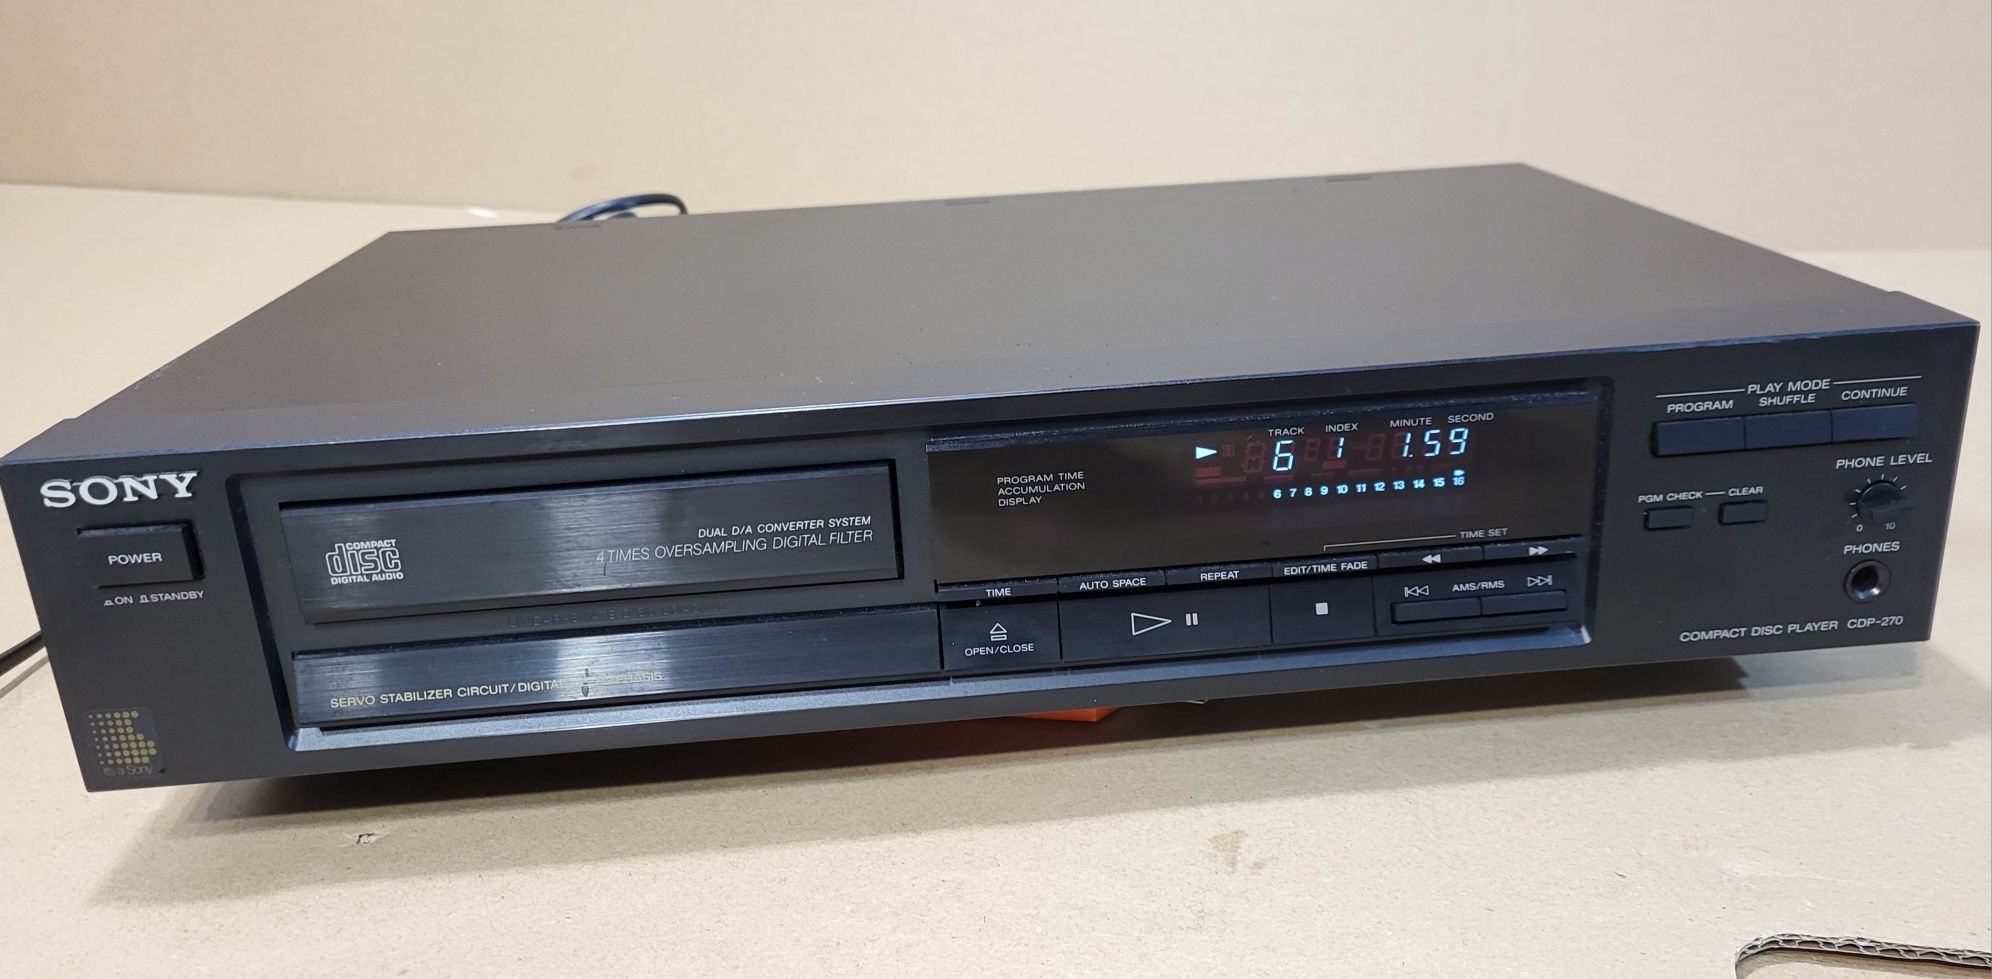 odtwarzacz CD Sony CDP-270